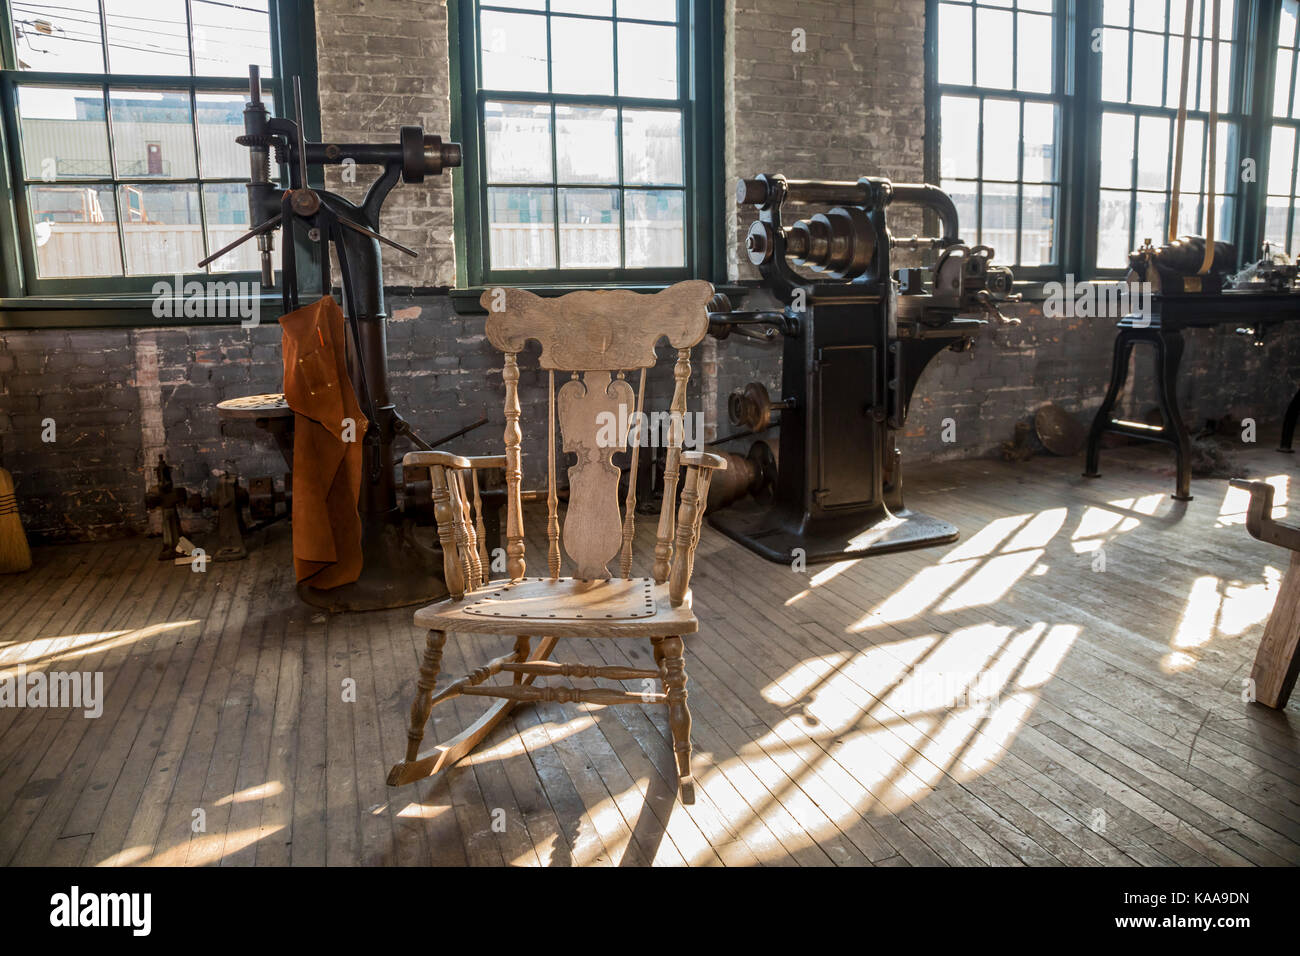 Detroit, Michigan - una ricreazione del segreto stanza sperimentale a Henry Ford vinello avenue impianto. Il modello t è stato sviluppato in questa sala nel 1908 Foto Stock